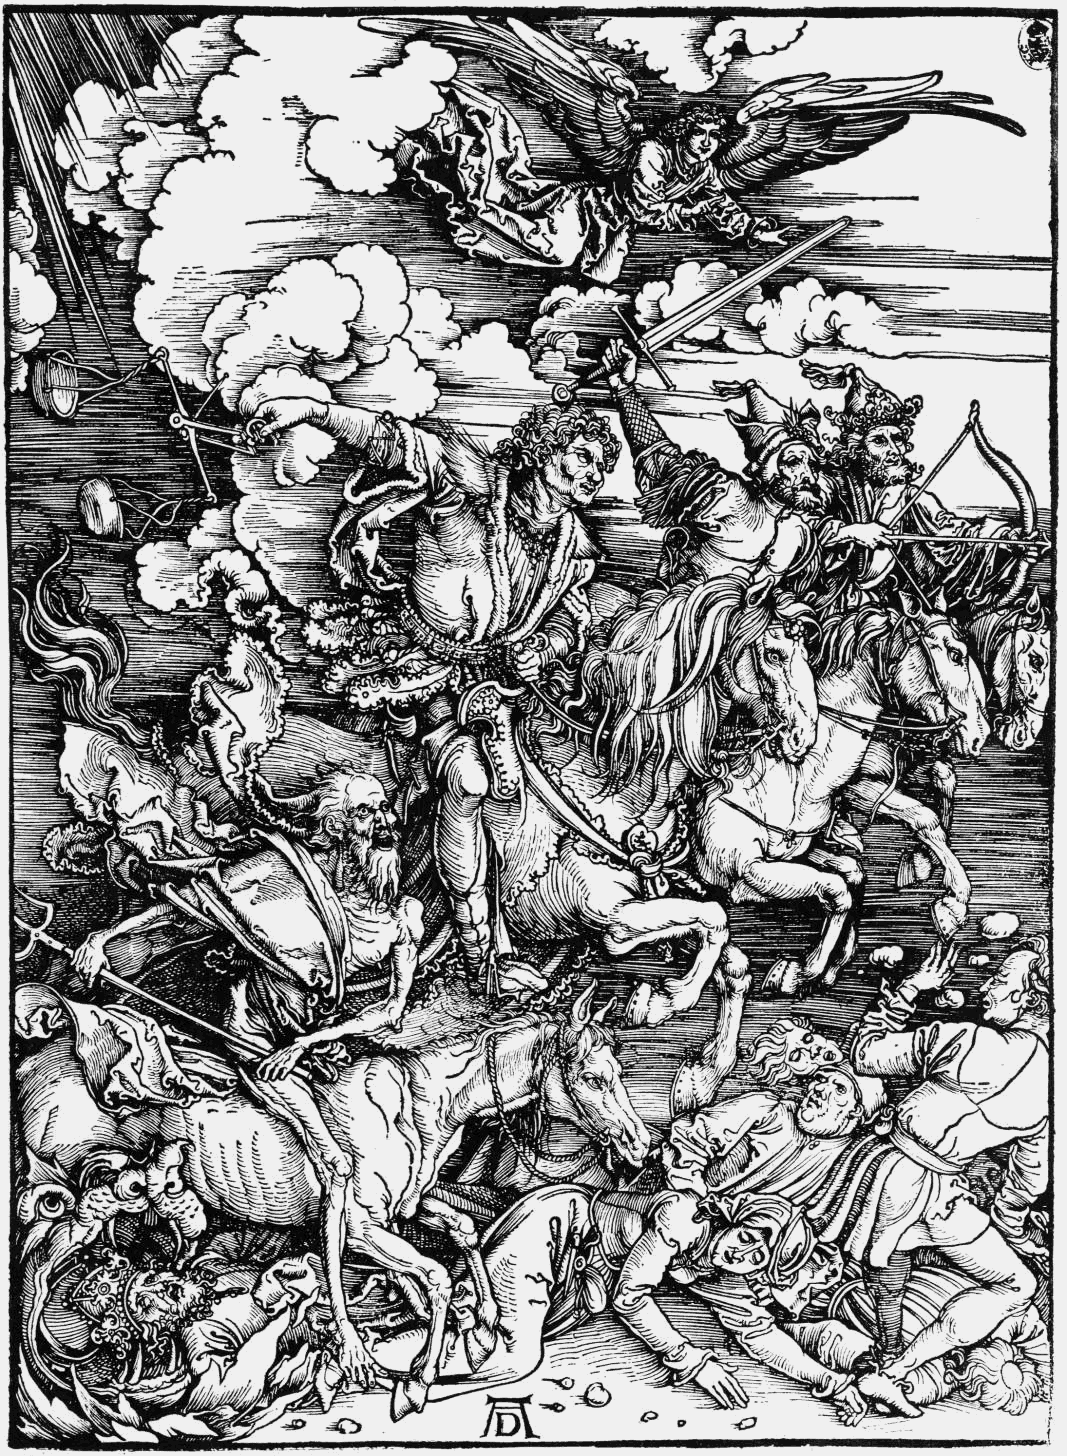 Darko Mitrevski: Albrecht Dürer, woodcut, The Four Horsemen of the ...